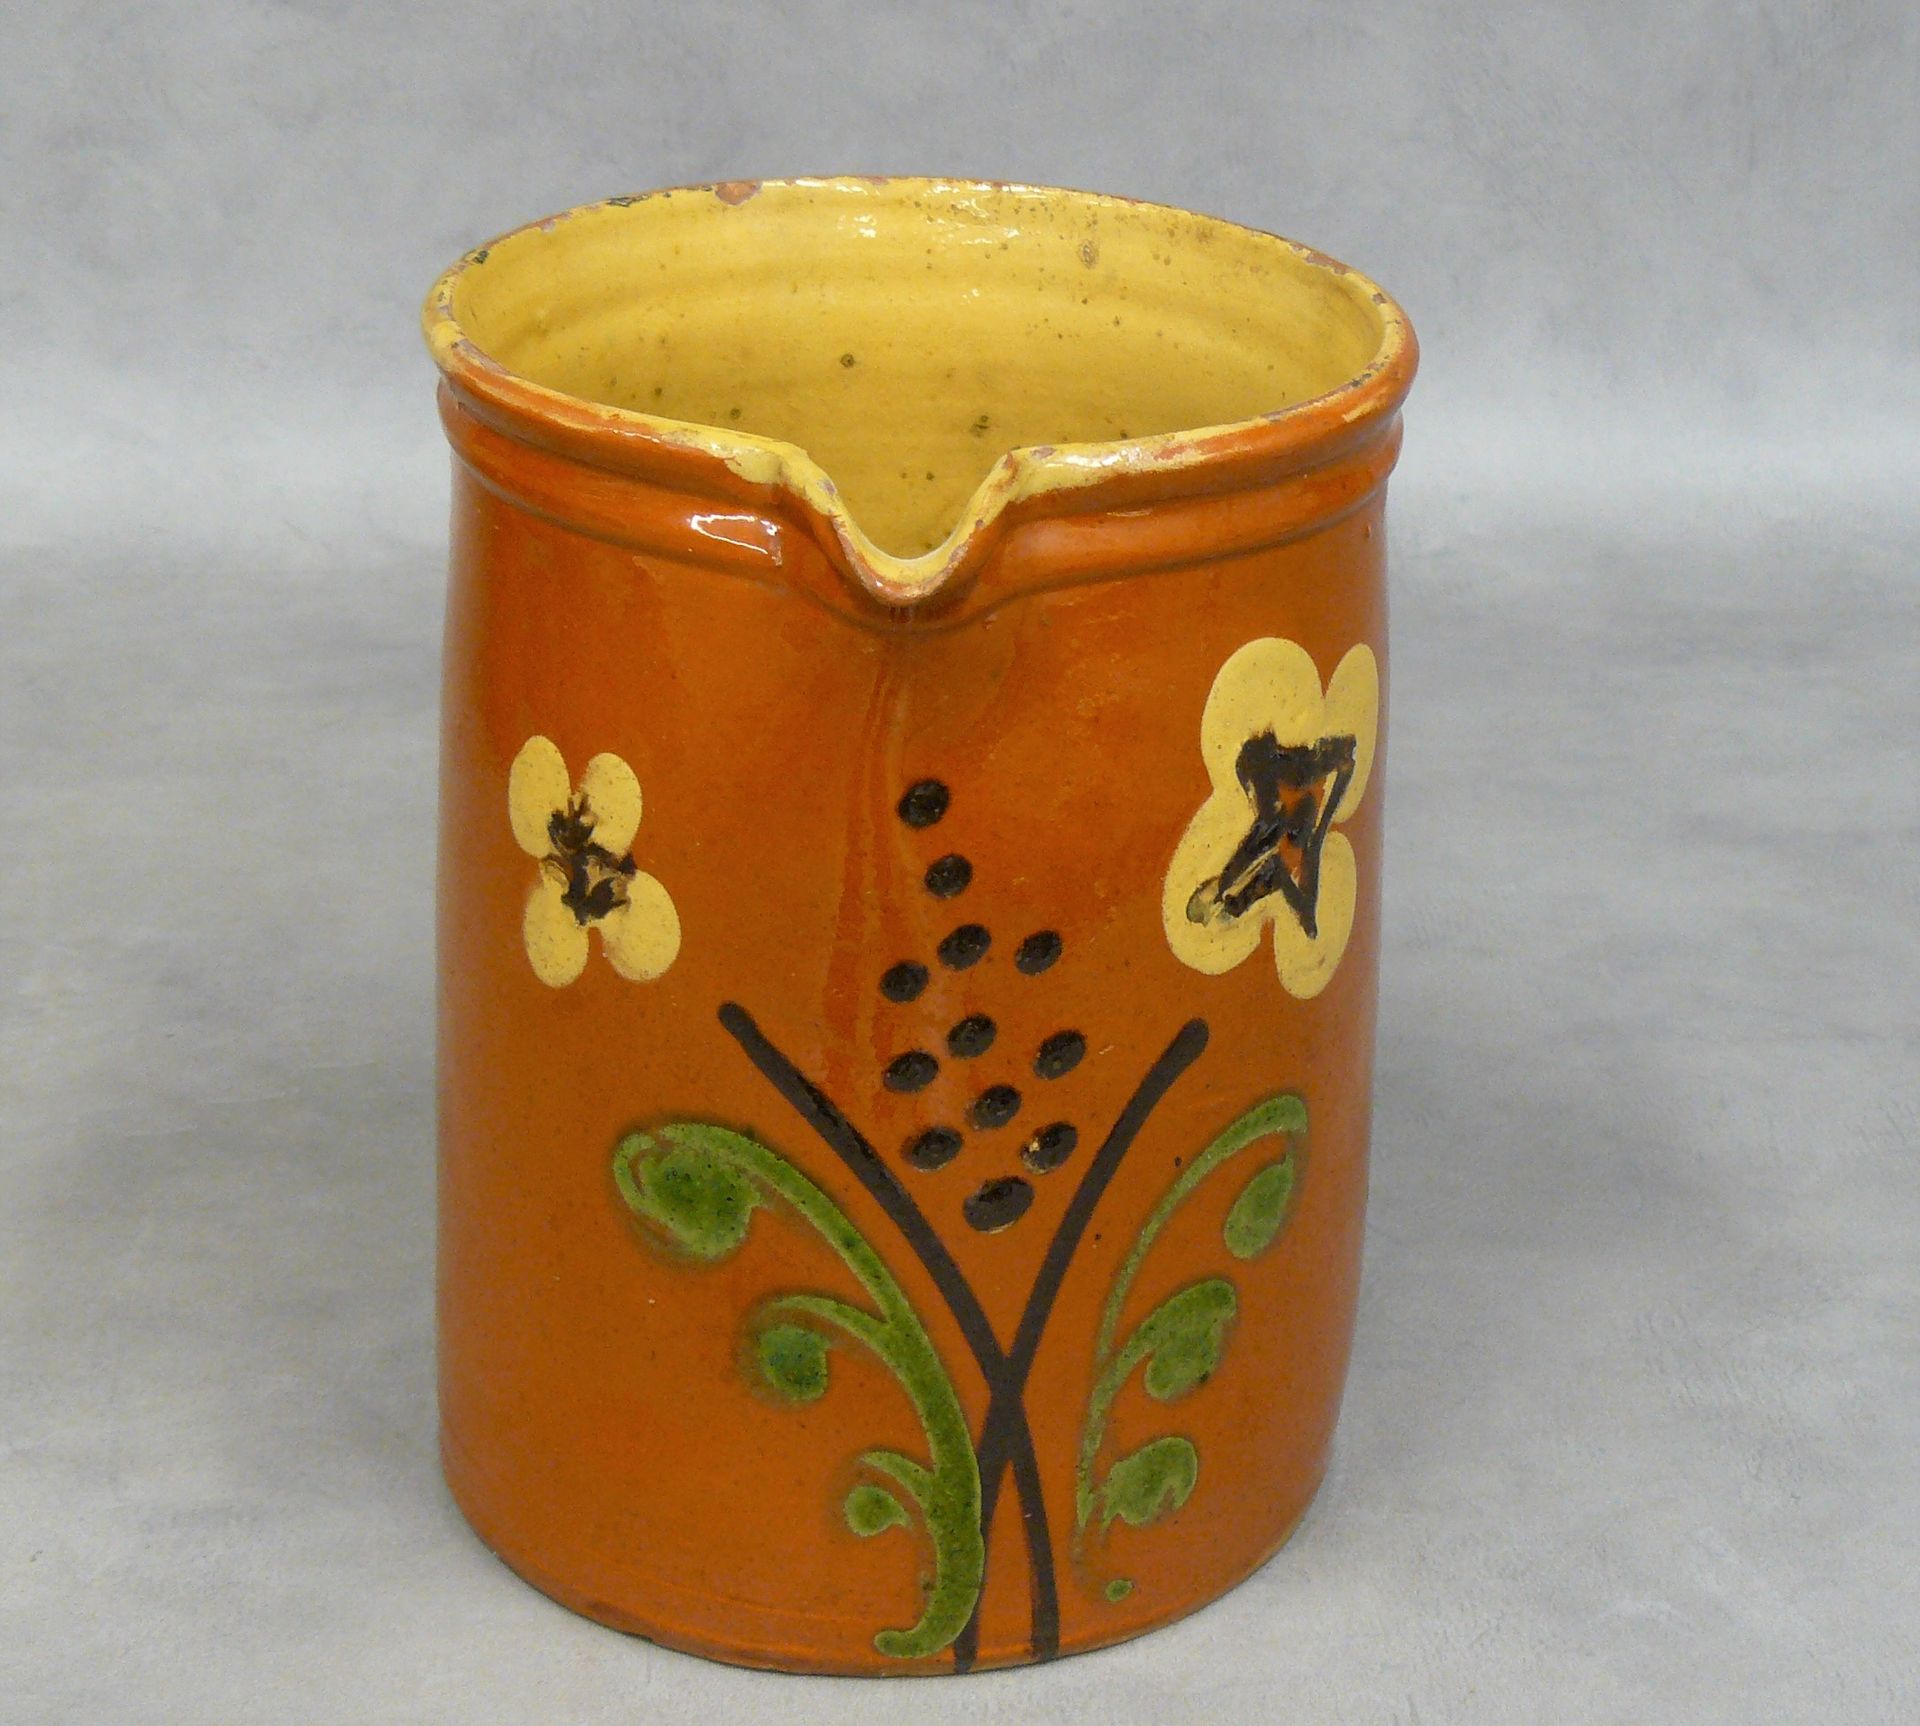 Null un grande vaso diritto con decorazione floreale su sfondo ocra - H 22,5 cm